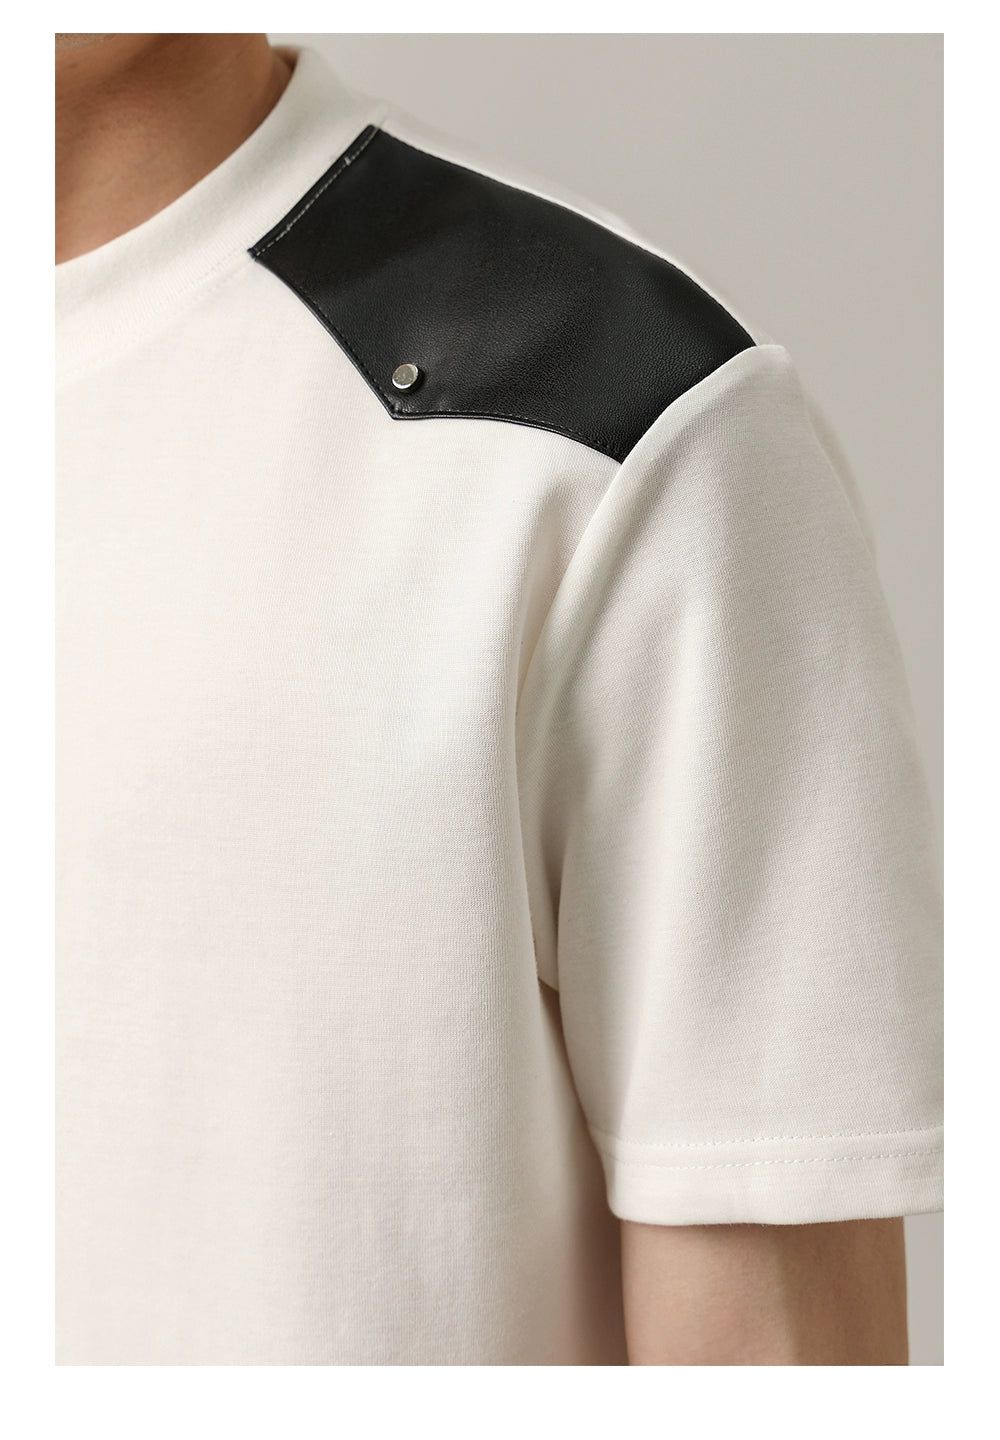 Zhou Black and White Flowers Shirt-korean-fashion-Shirt-Zhou's Closet-OH Garments